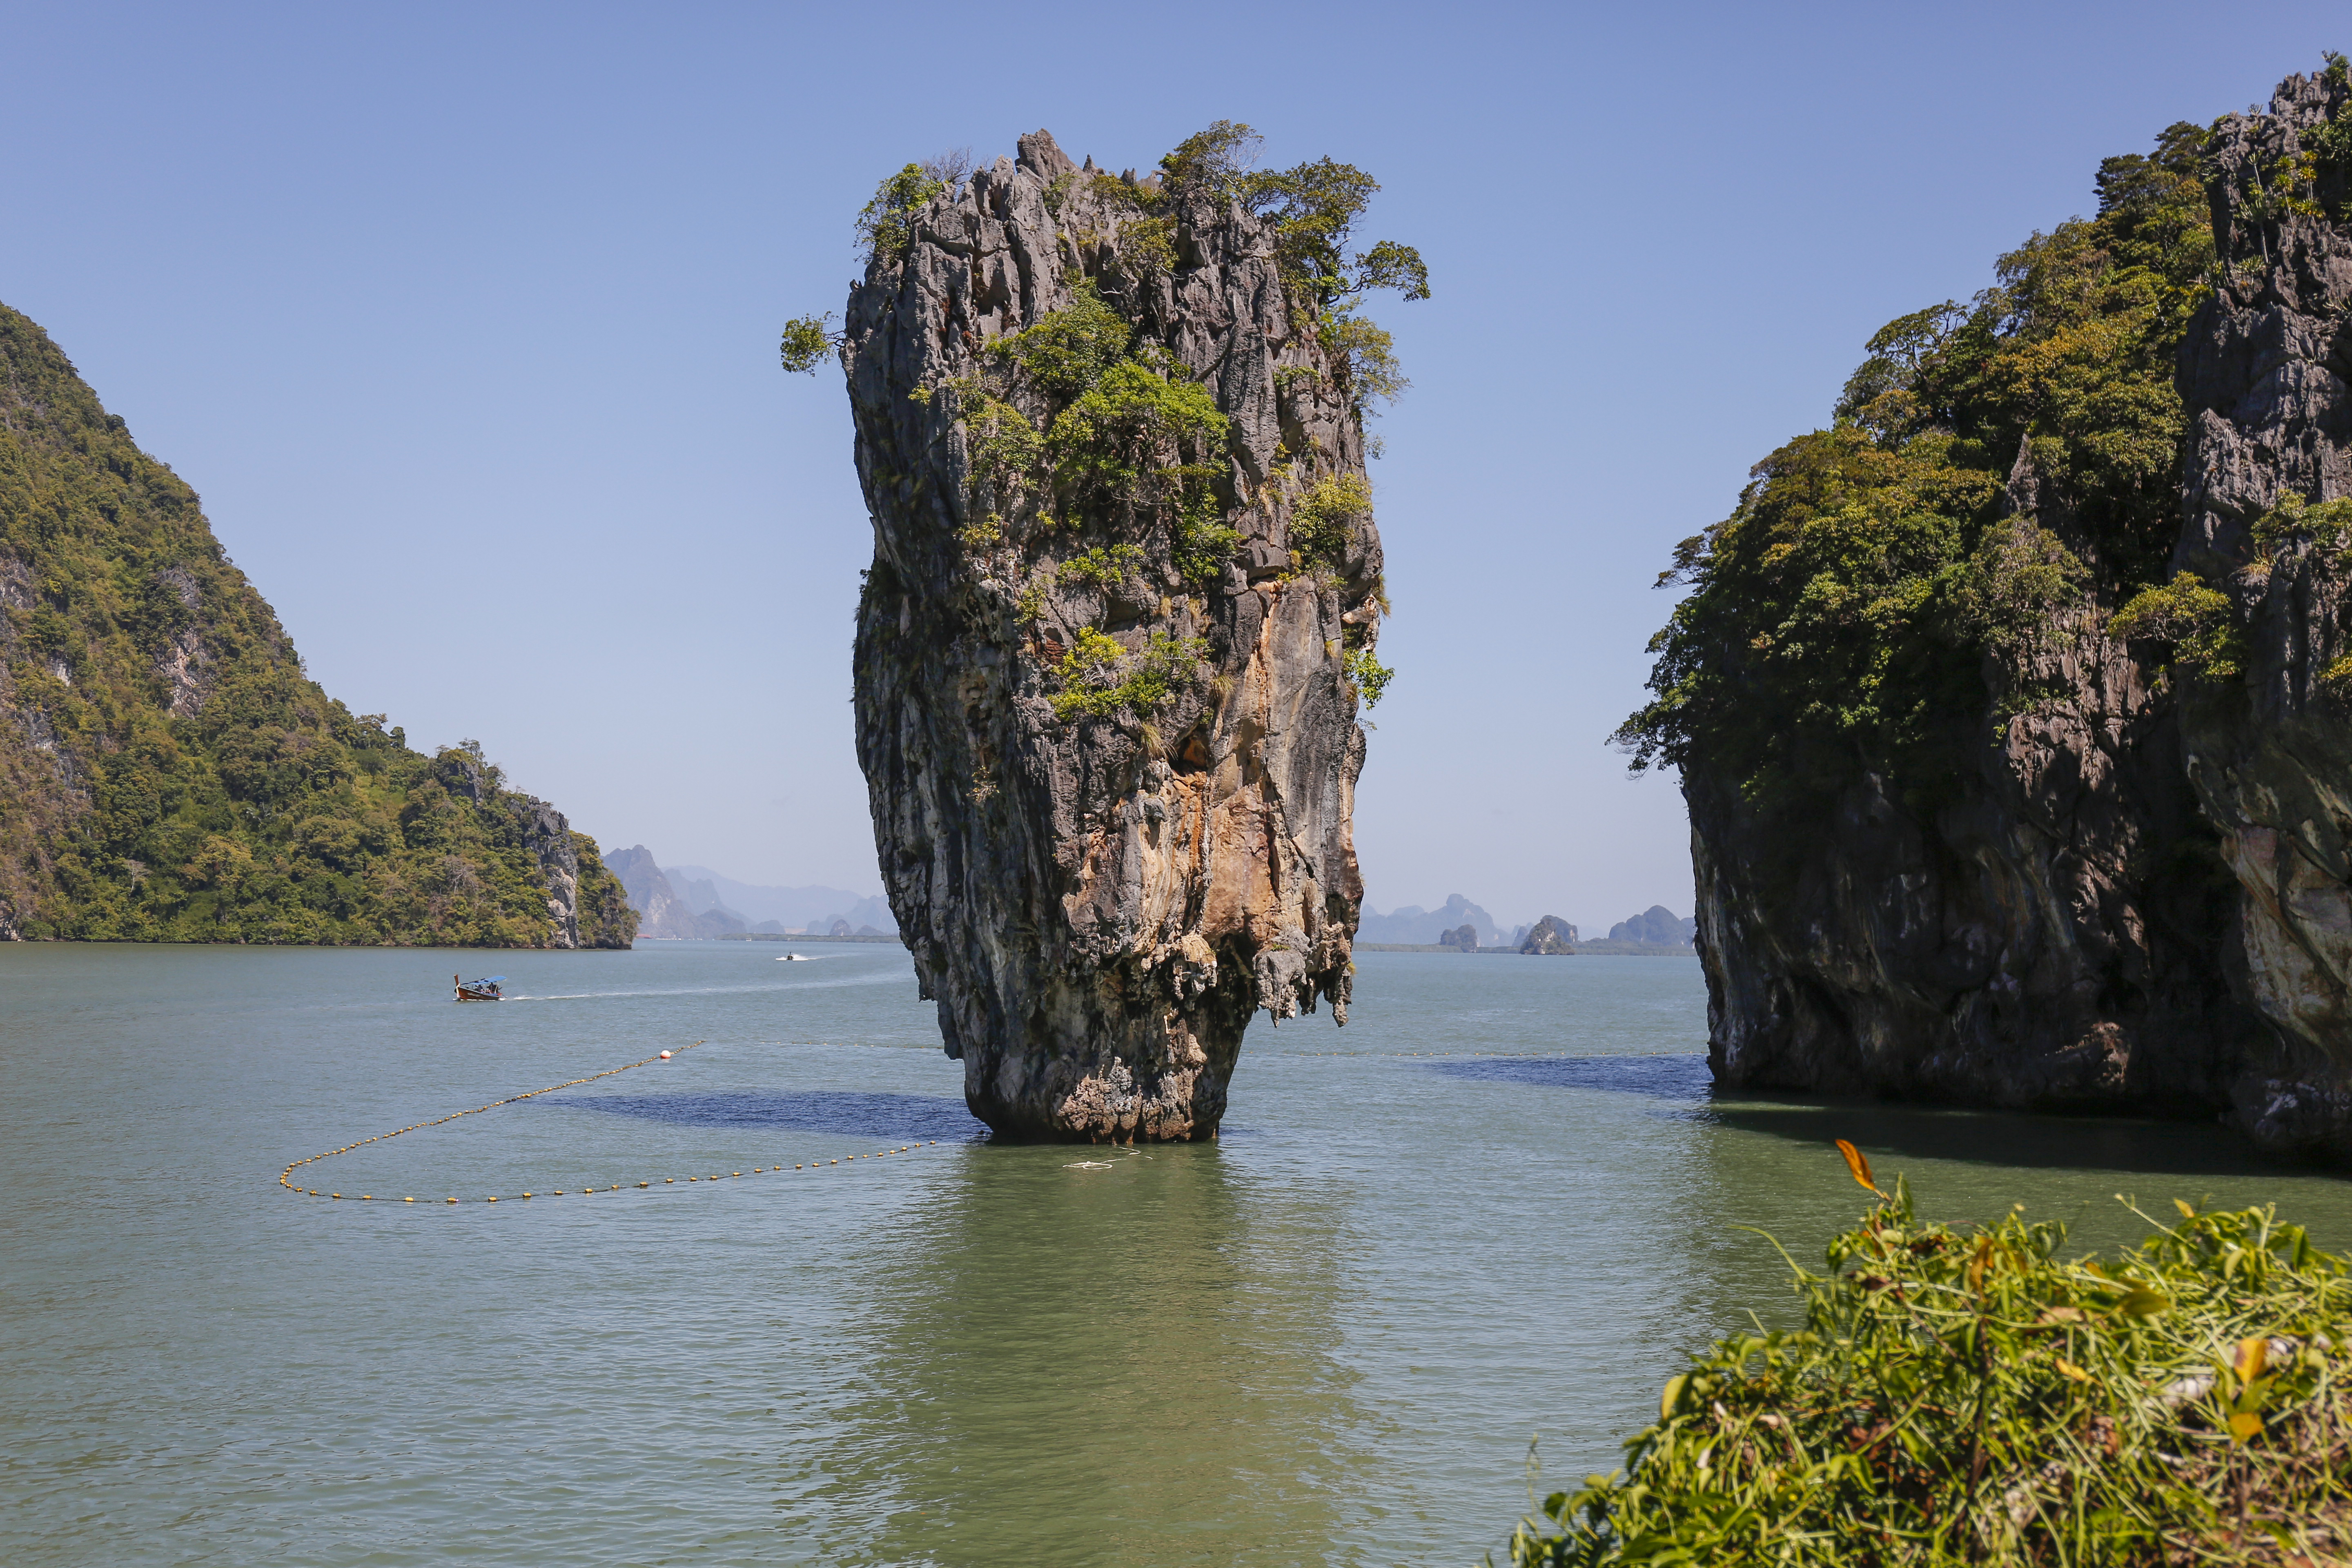 Ko Tapu rock of James Bond Island in Phang Nga National Park on January 09, 2015 in Ao Phang Nga National Park, Thailand.